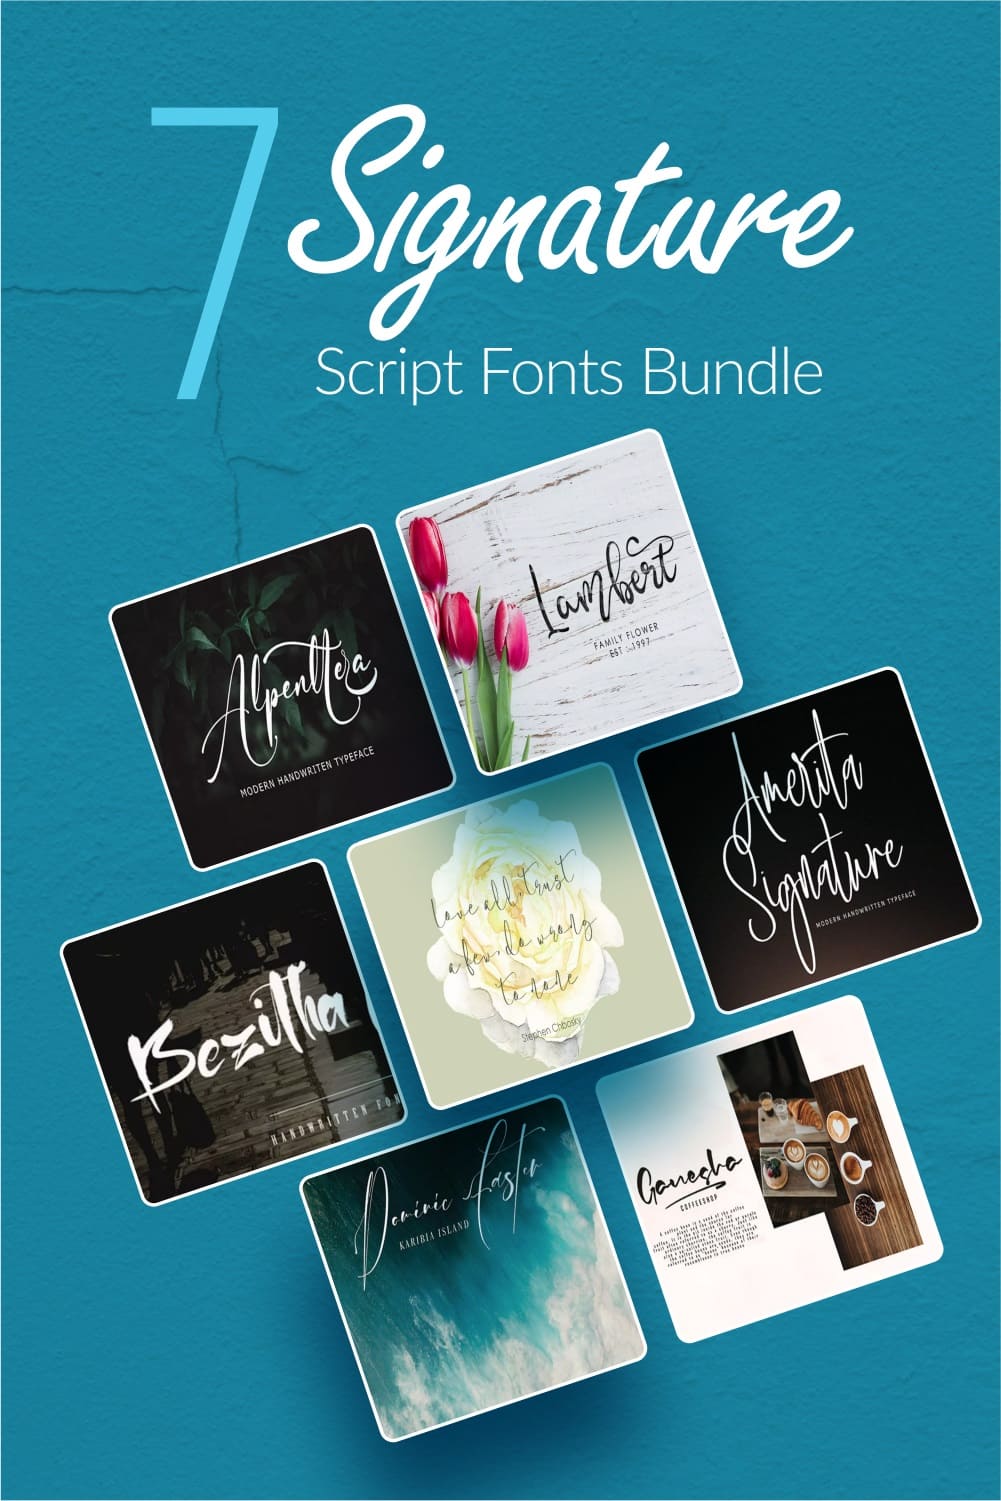 7 signature script fonts bundle Pinterest collage image.